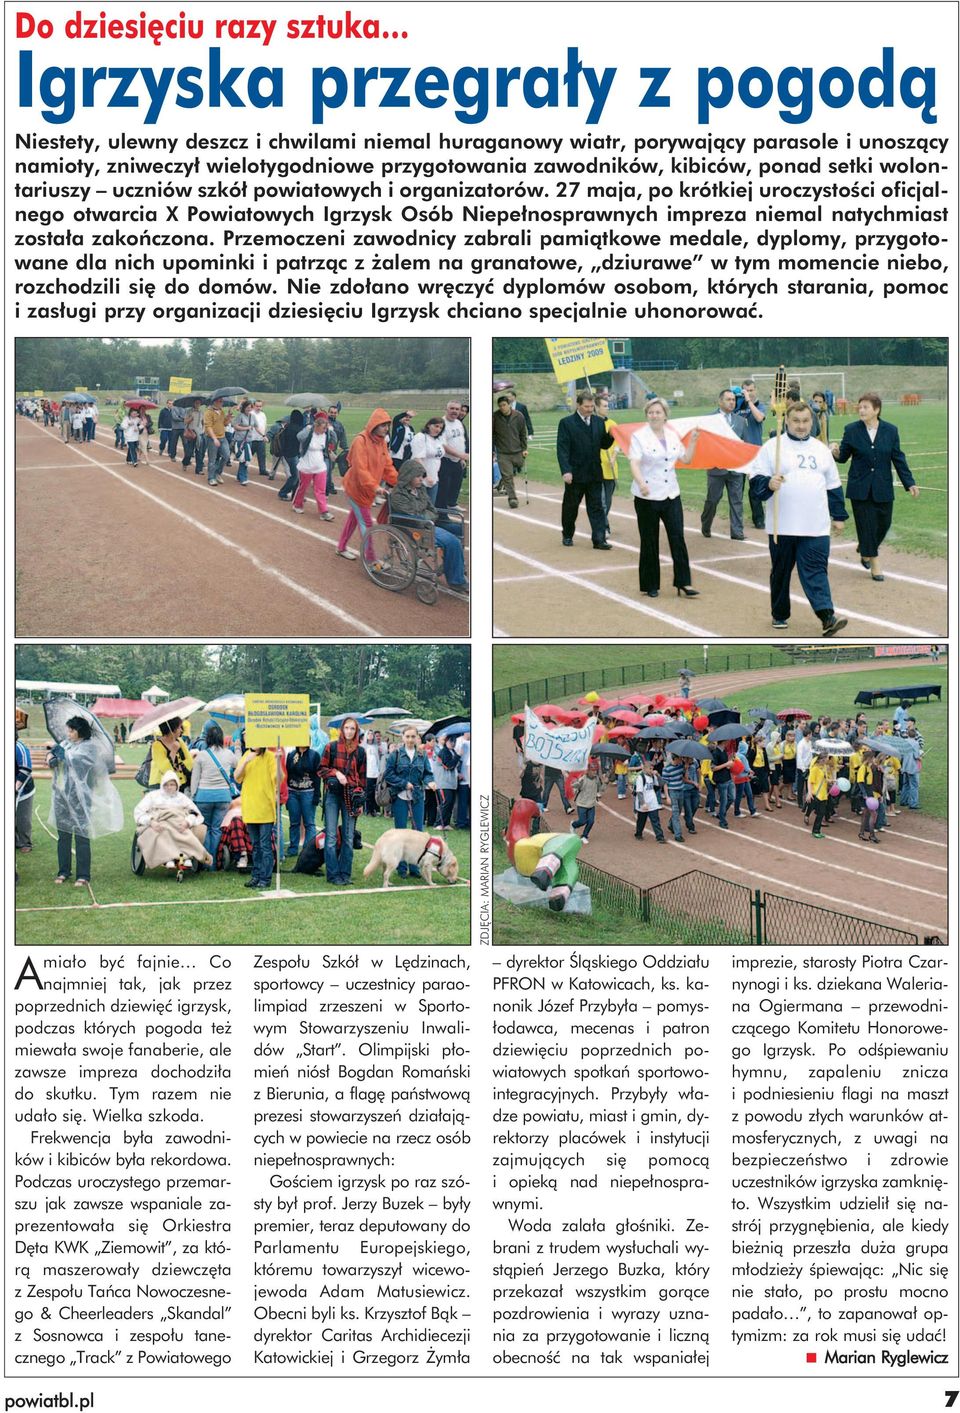 27 maja, po krótkiej uroczystości oficjalnego otwarcia X Powiatowych Igrzysk Osób Niepełnosprawnych impreza niemal natychmiast została zakończona.